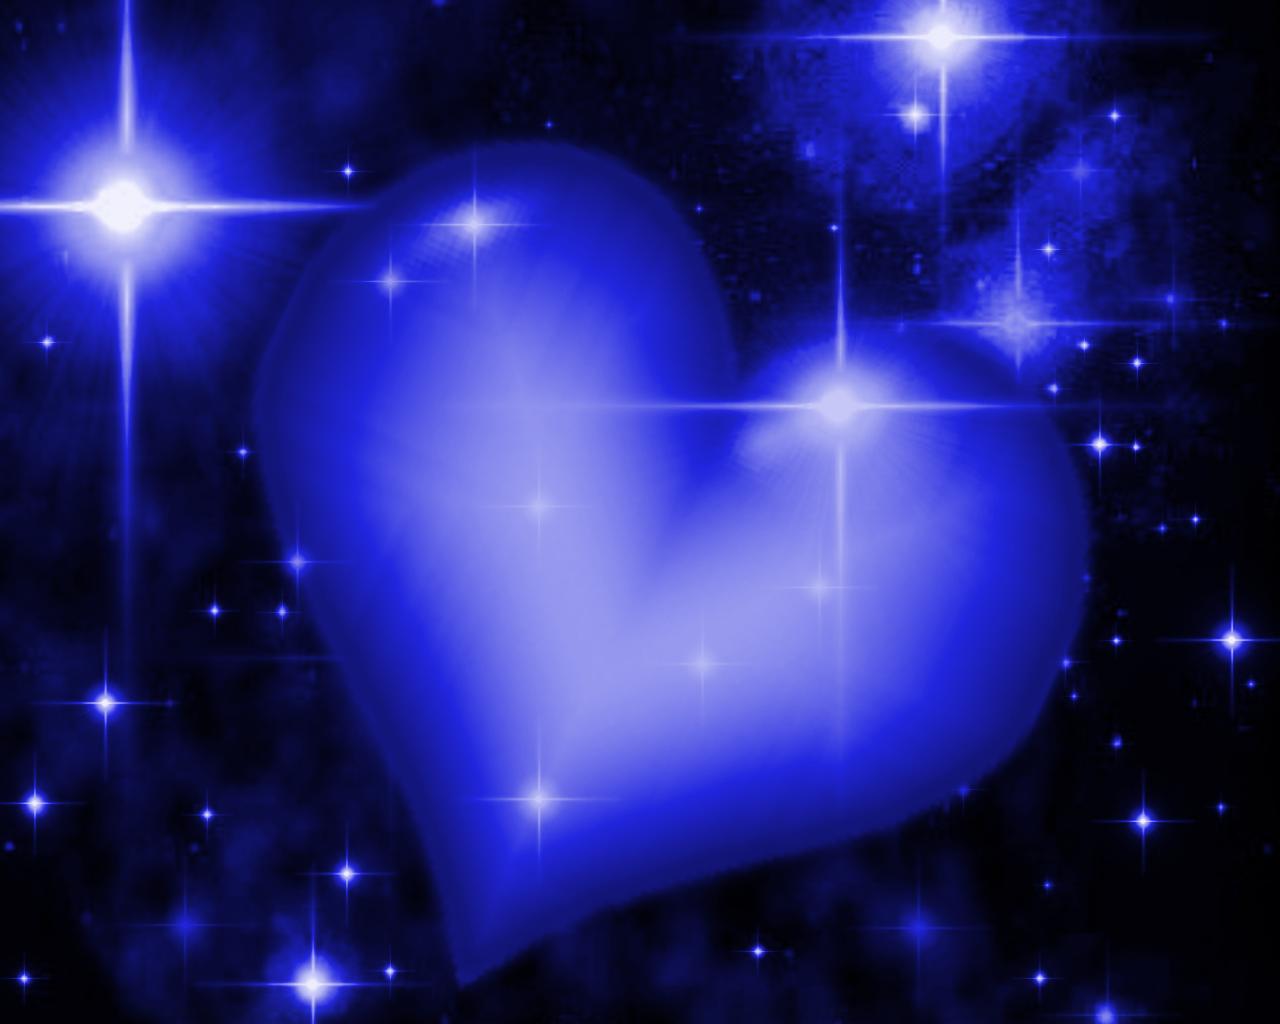 푸른 심장 벽지,푸른,빛,강청색,우주,렌즈 플레어